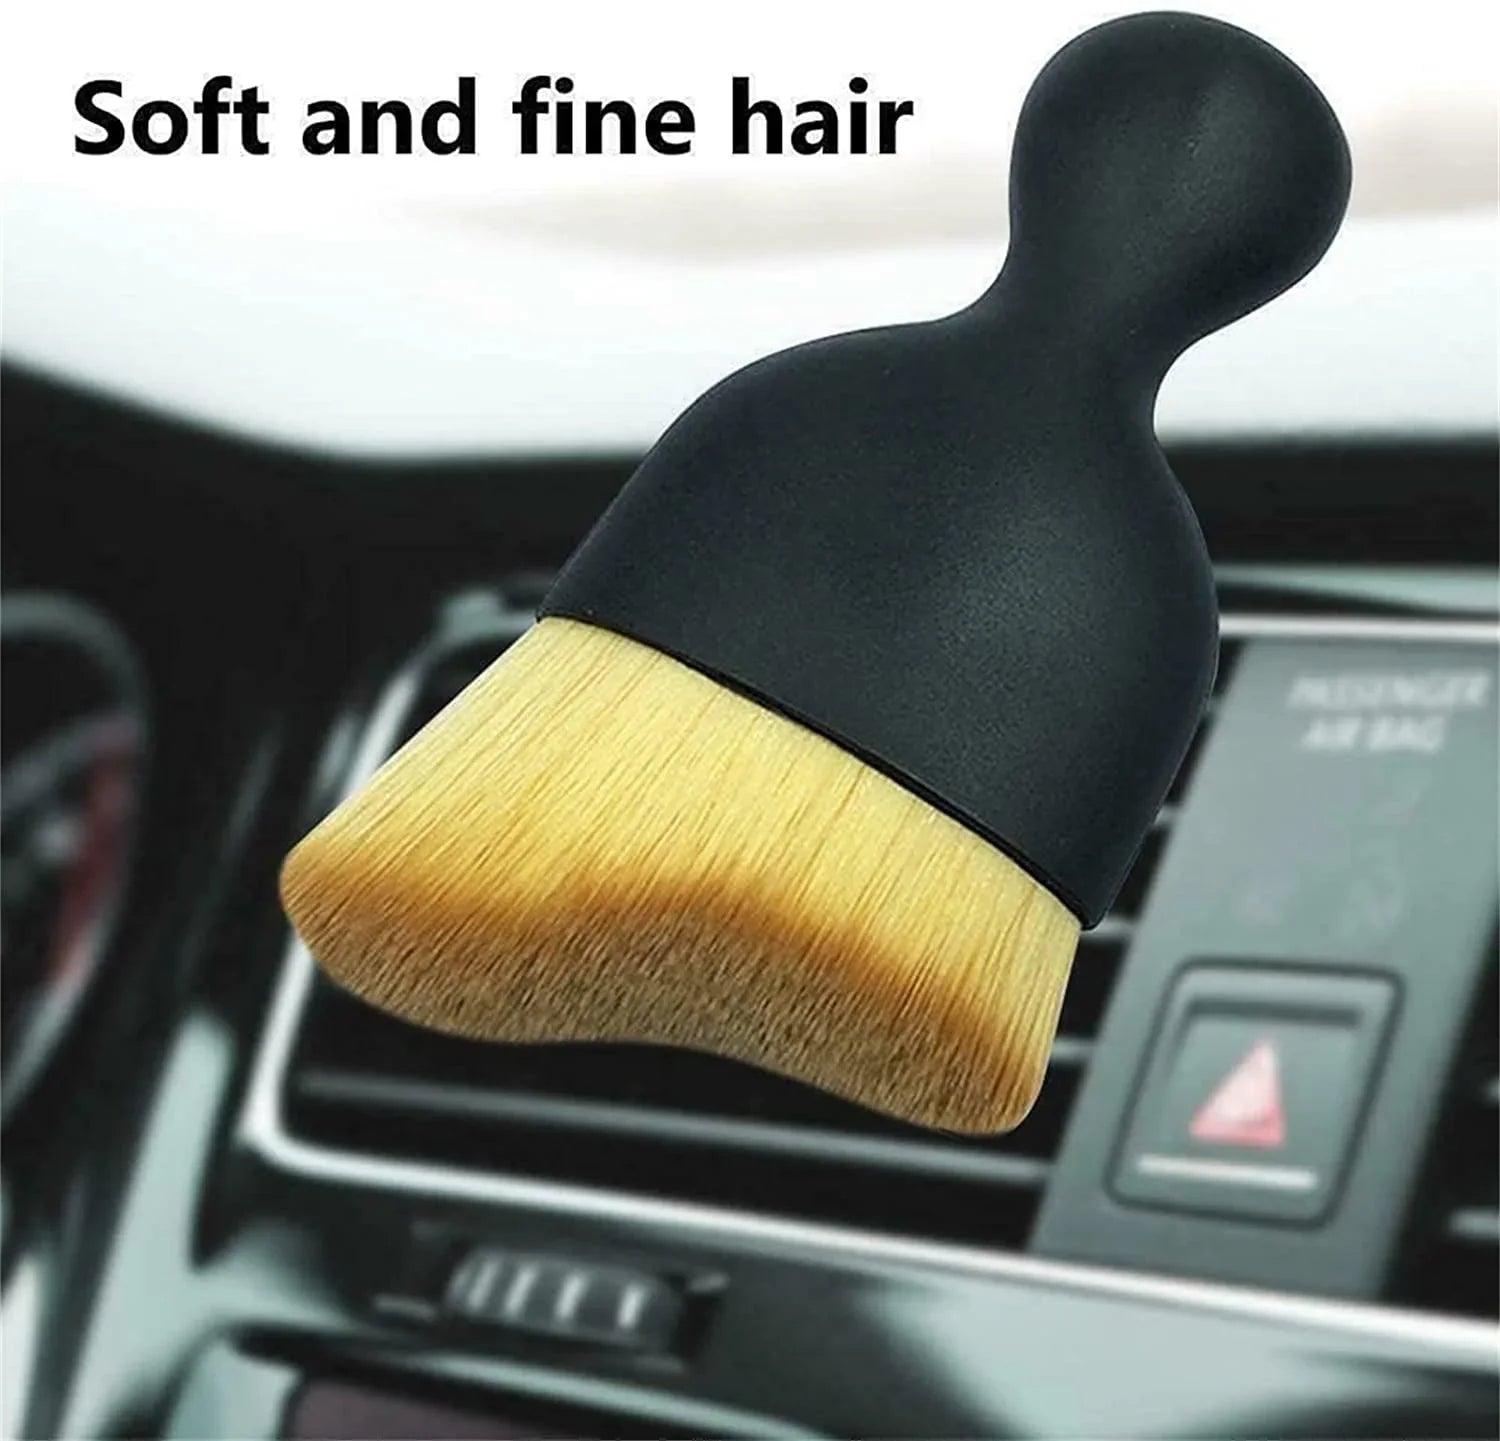 car interior cleaning multi-tool brush